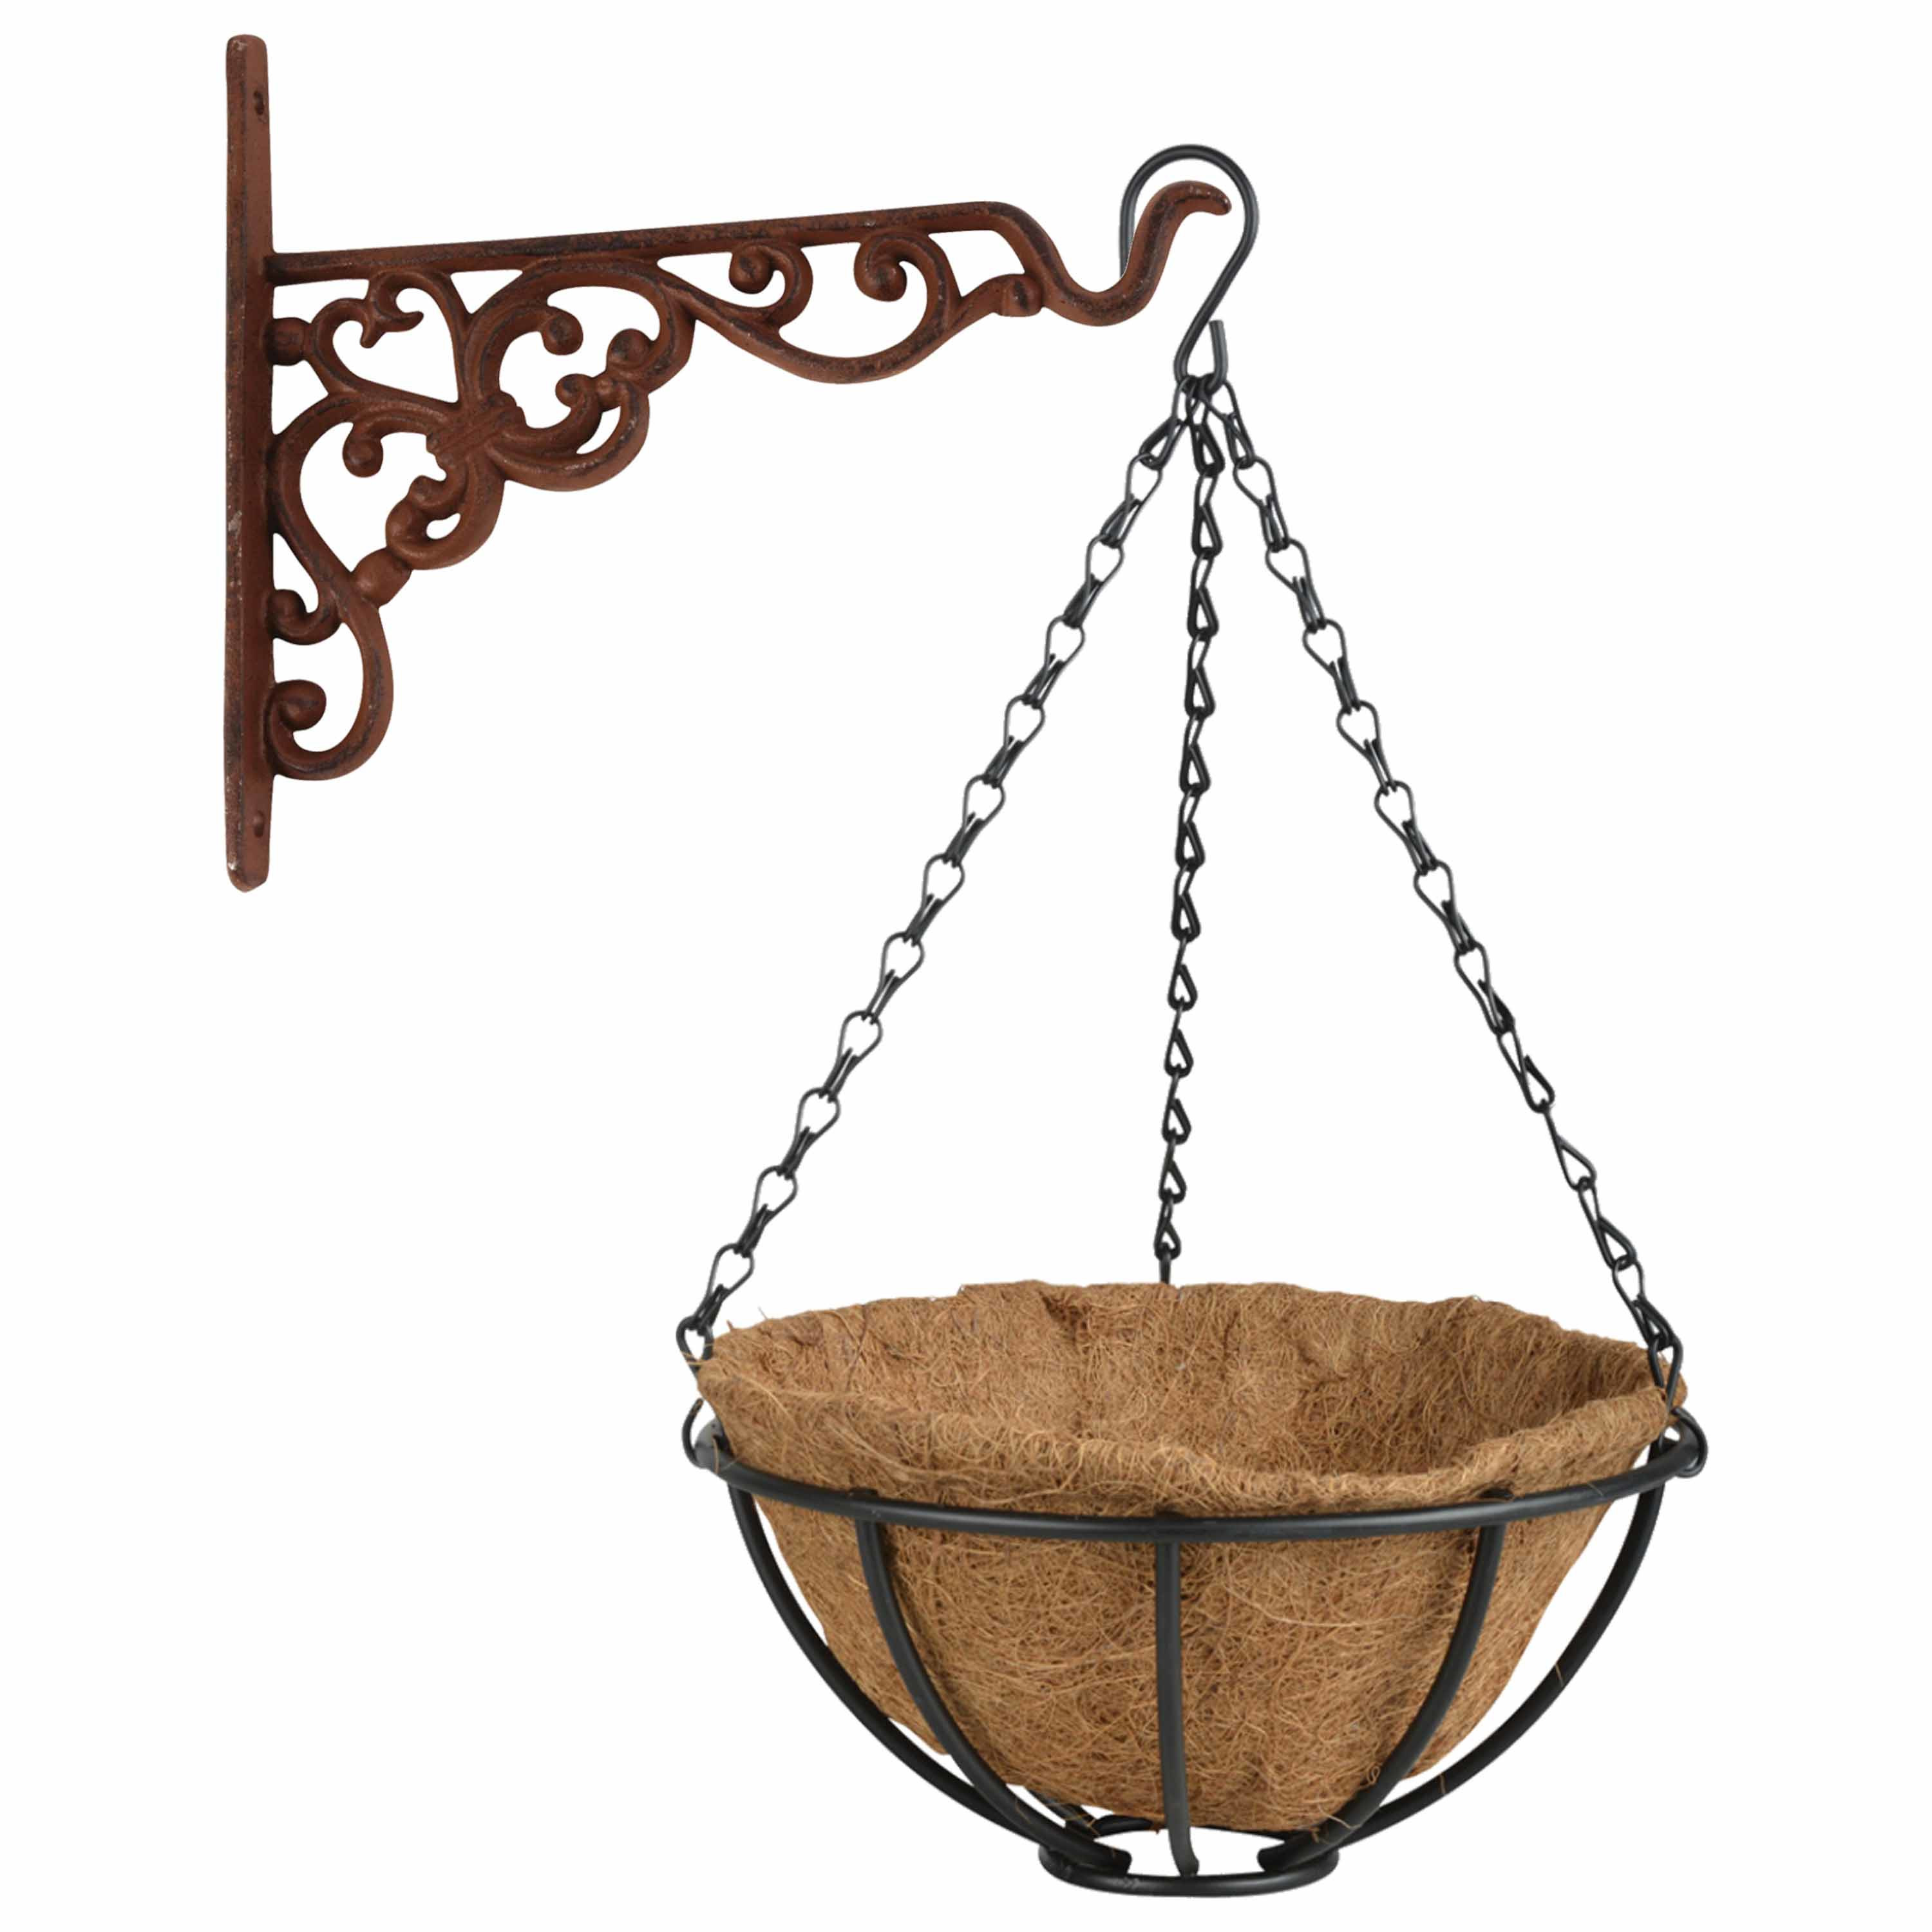 Hanging basket 25 cm met ijzeren muurhaak en kokos inlegvel